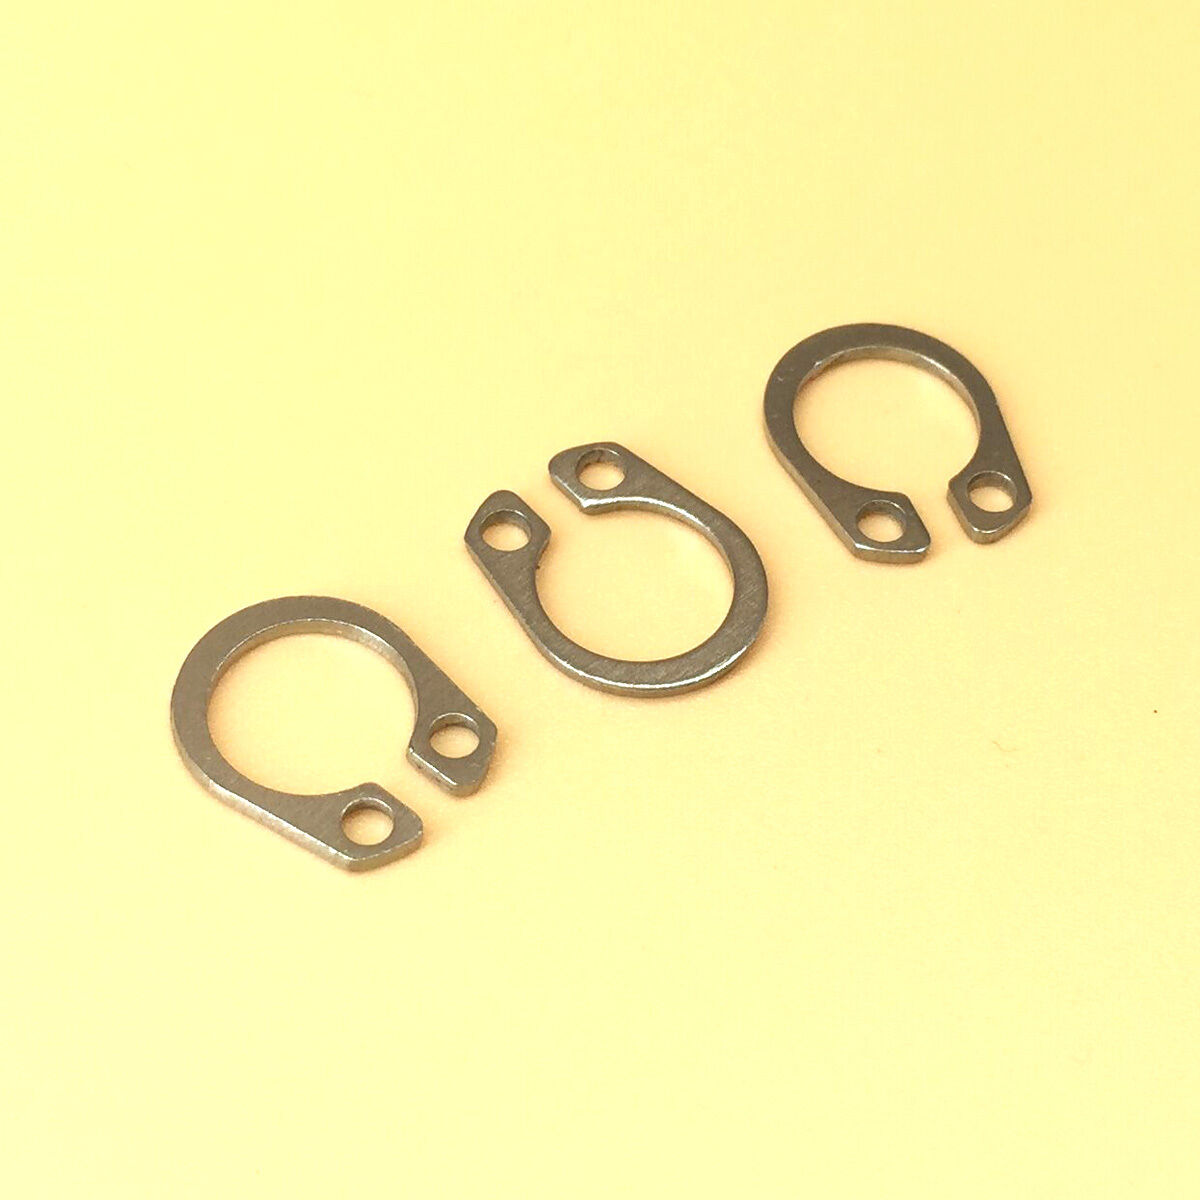 3mm - 18mm 304 Stainless Steel External Circlip Retaining Ring Snap Ring Kit